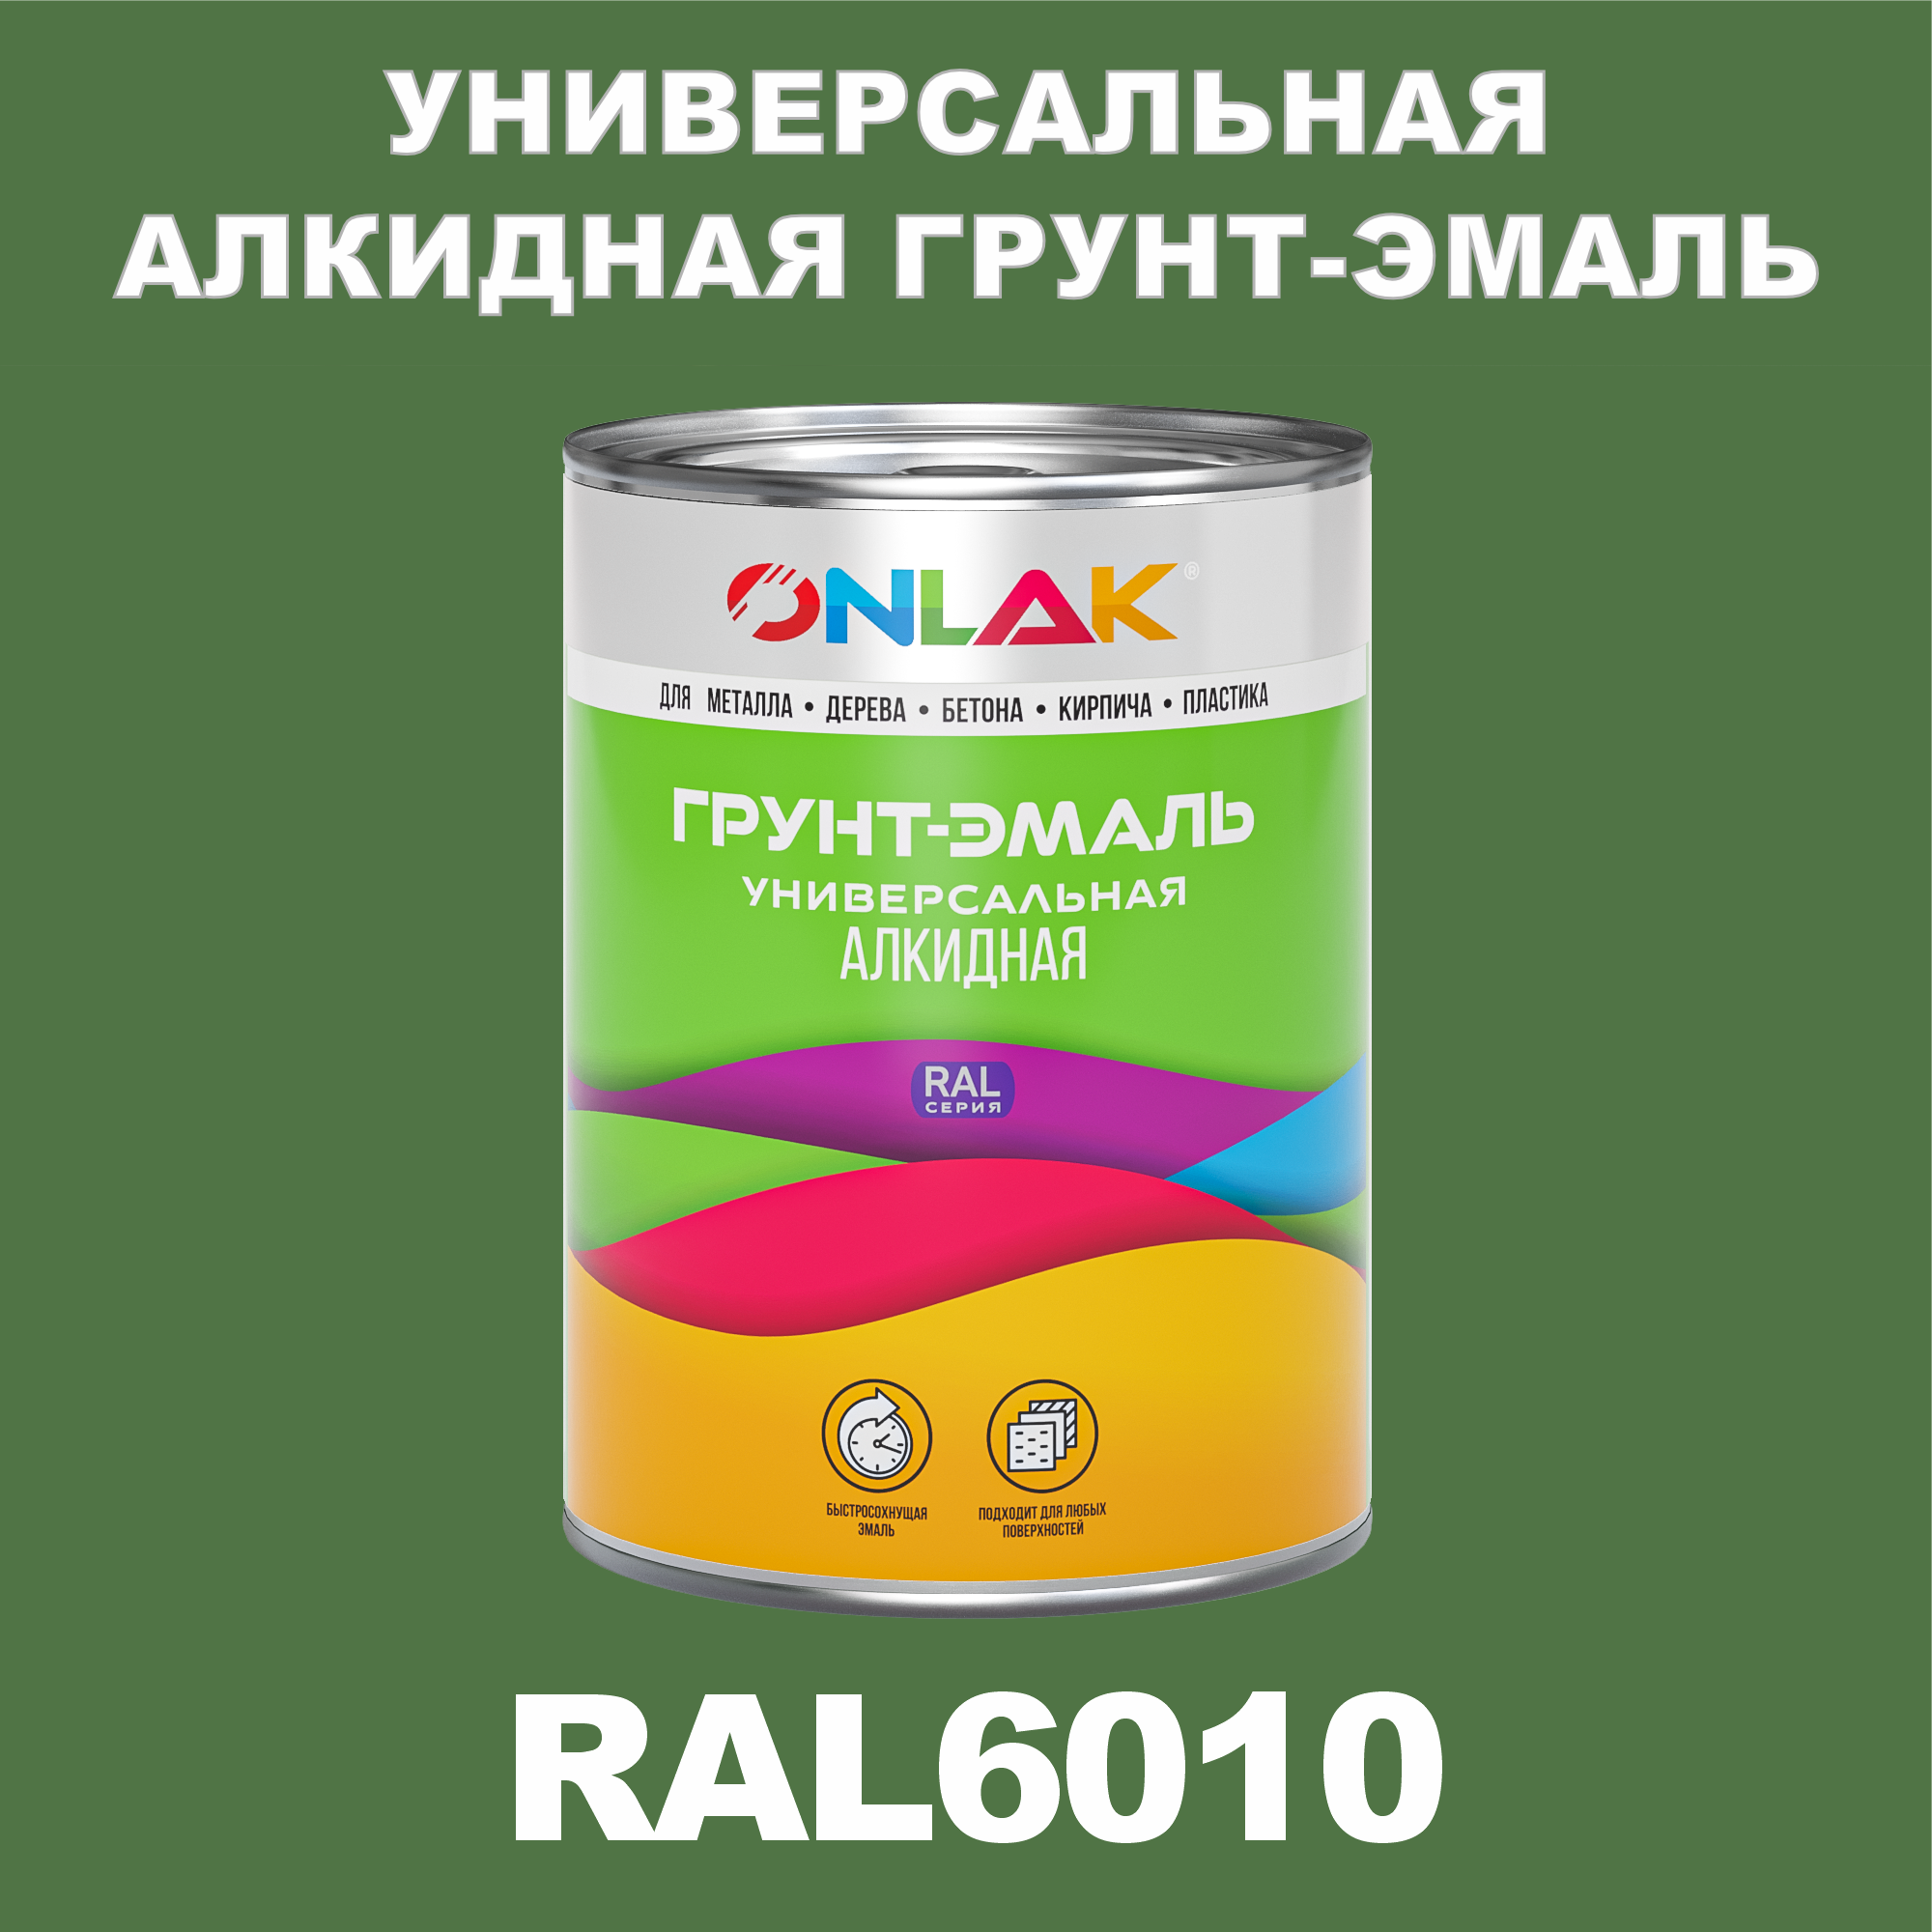 Грунт-эмаль ONLAK 1К RAL6010 антикоррозионная алкидная по металлу по ржавчине 1 кг грунт эмаль рас по ржавчине алкидная синяя 0 9 кг